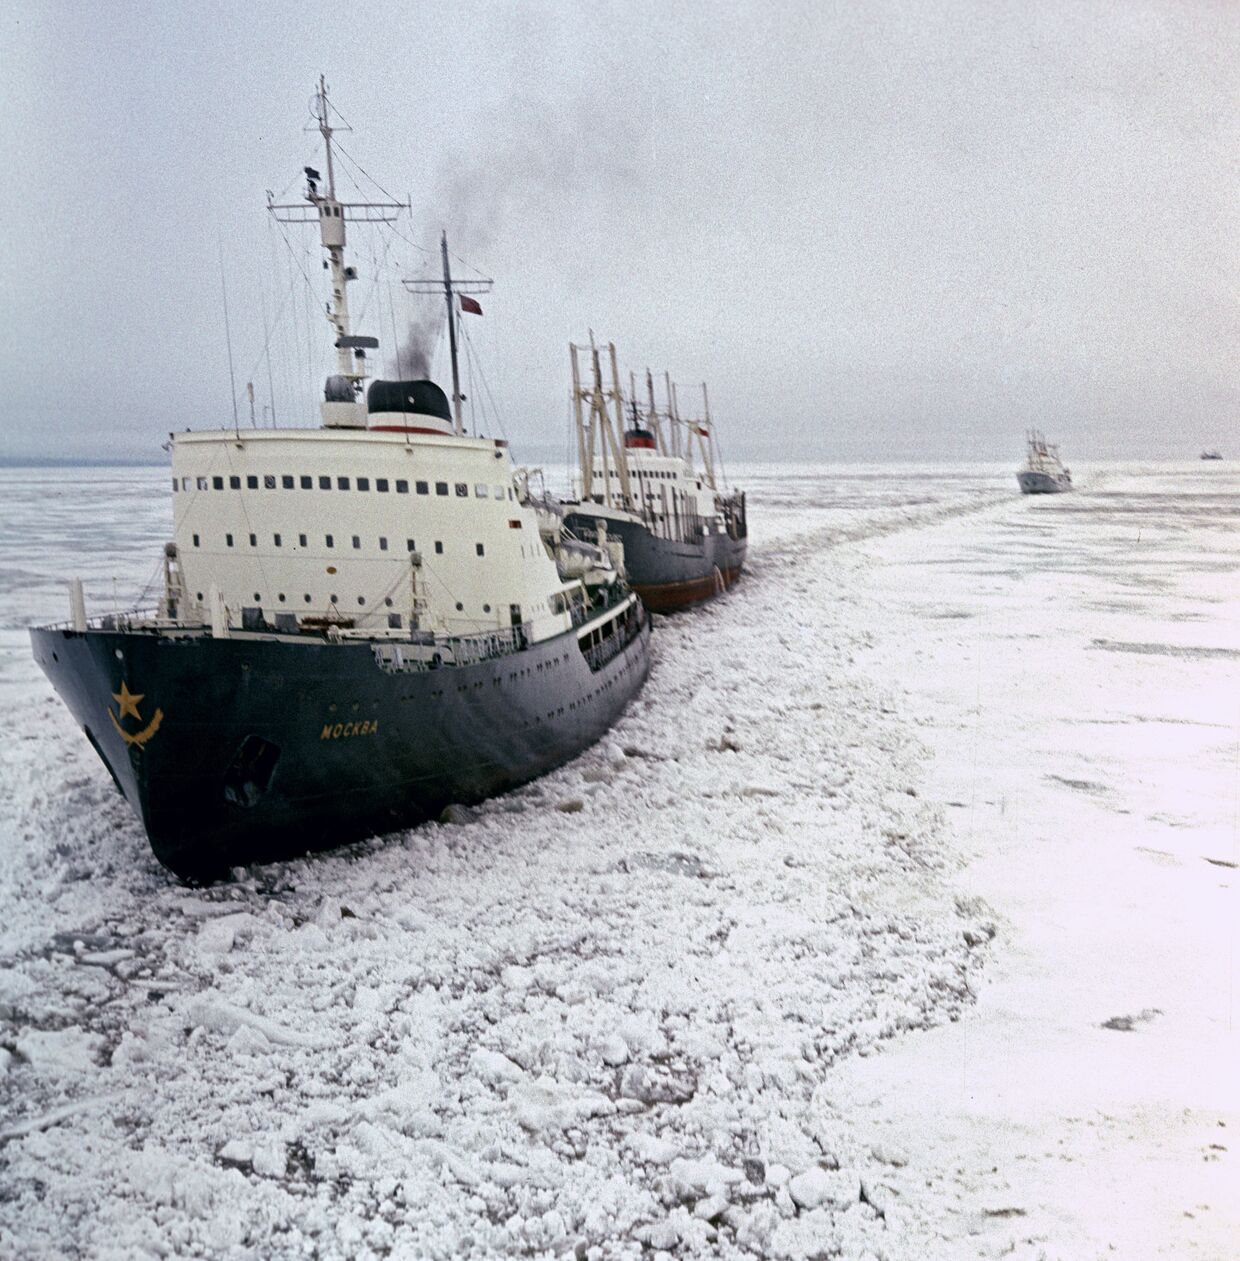 Ледокол Москва ведет караван судов сквозь льды Арктики